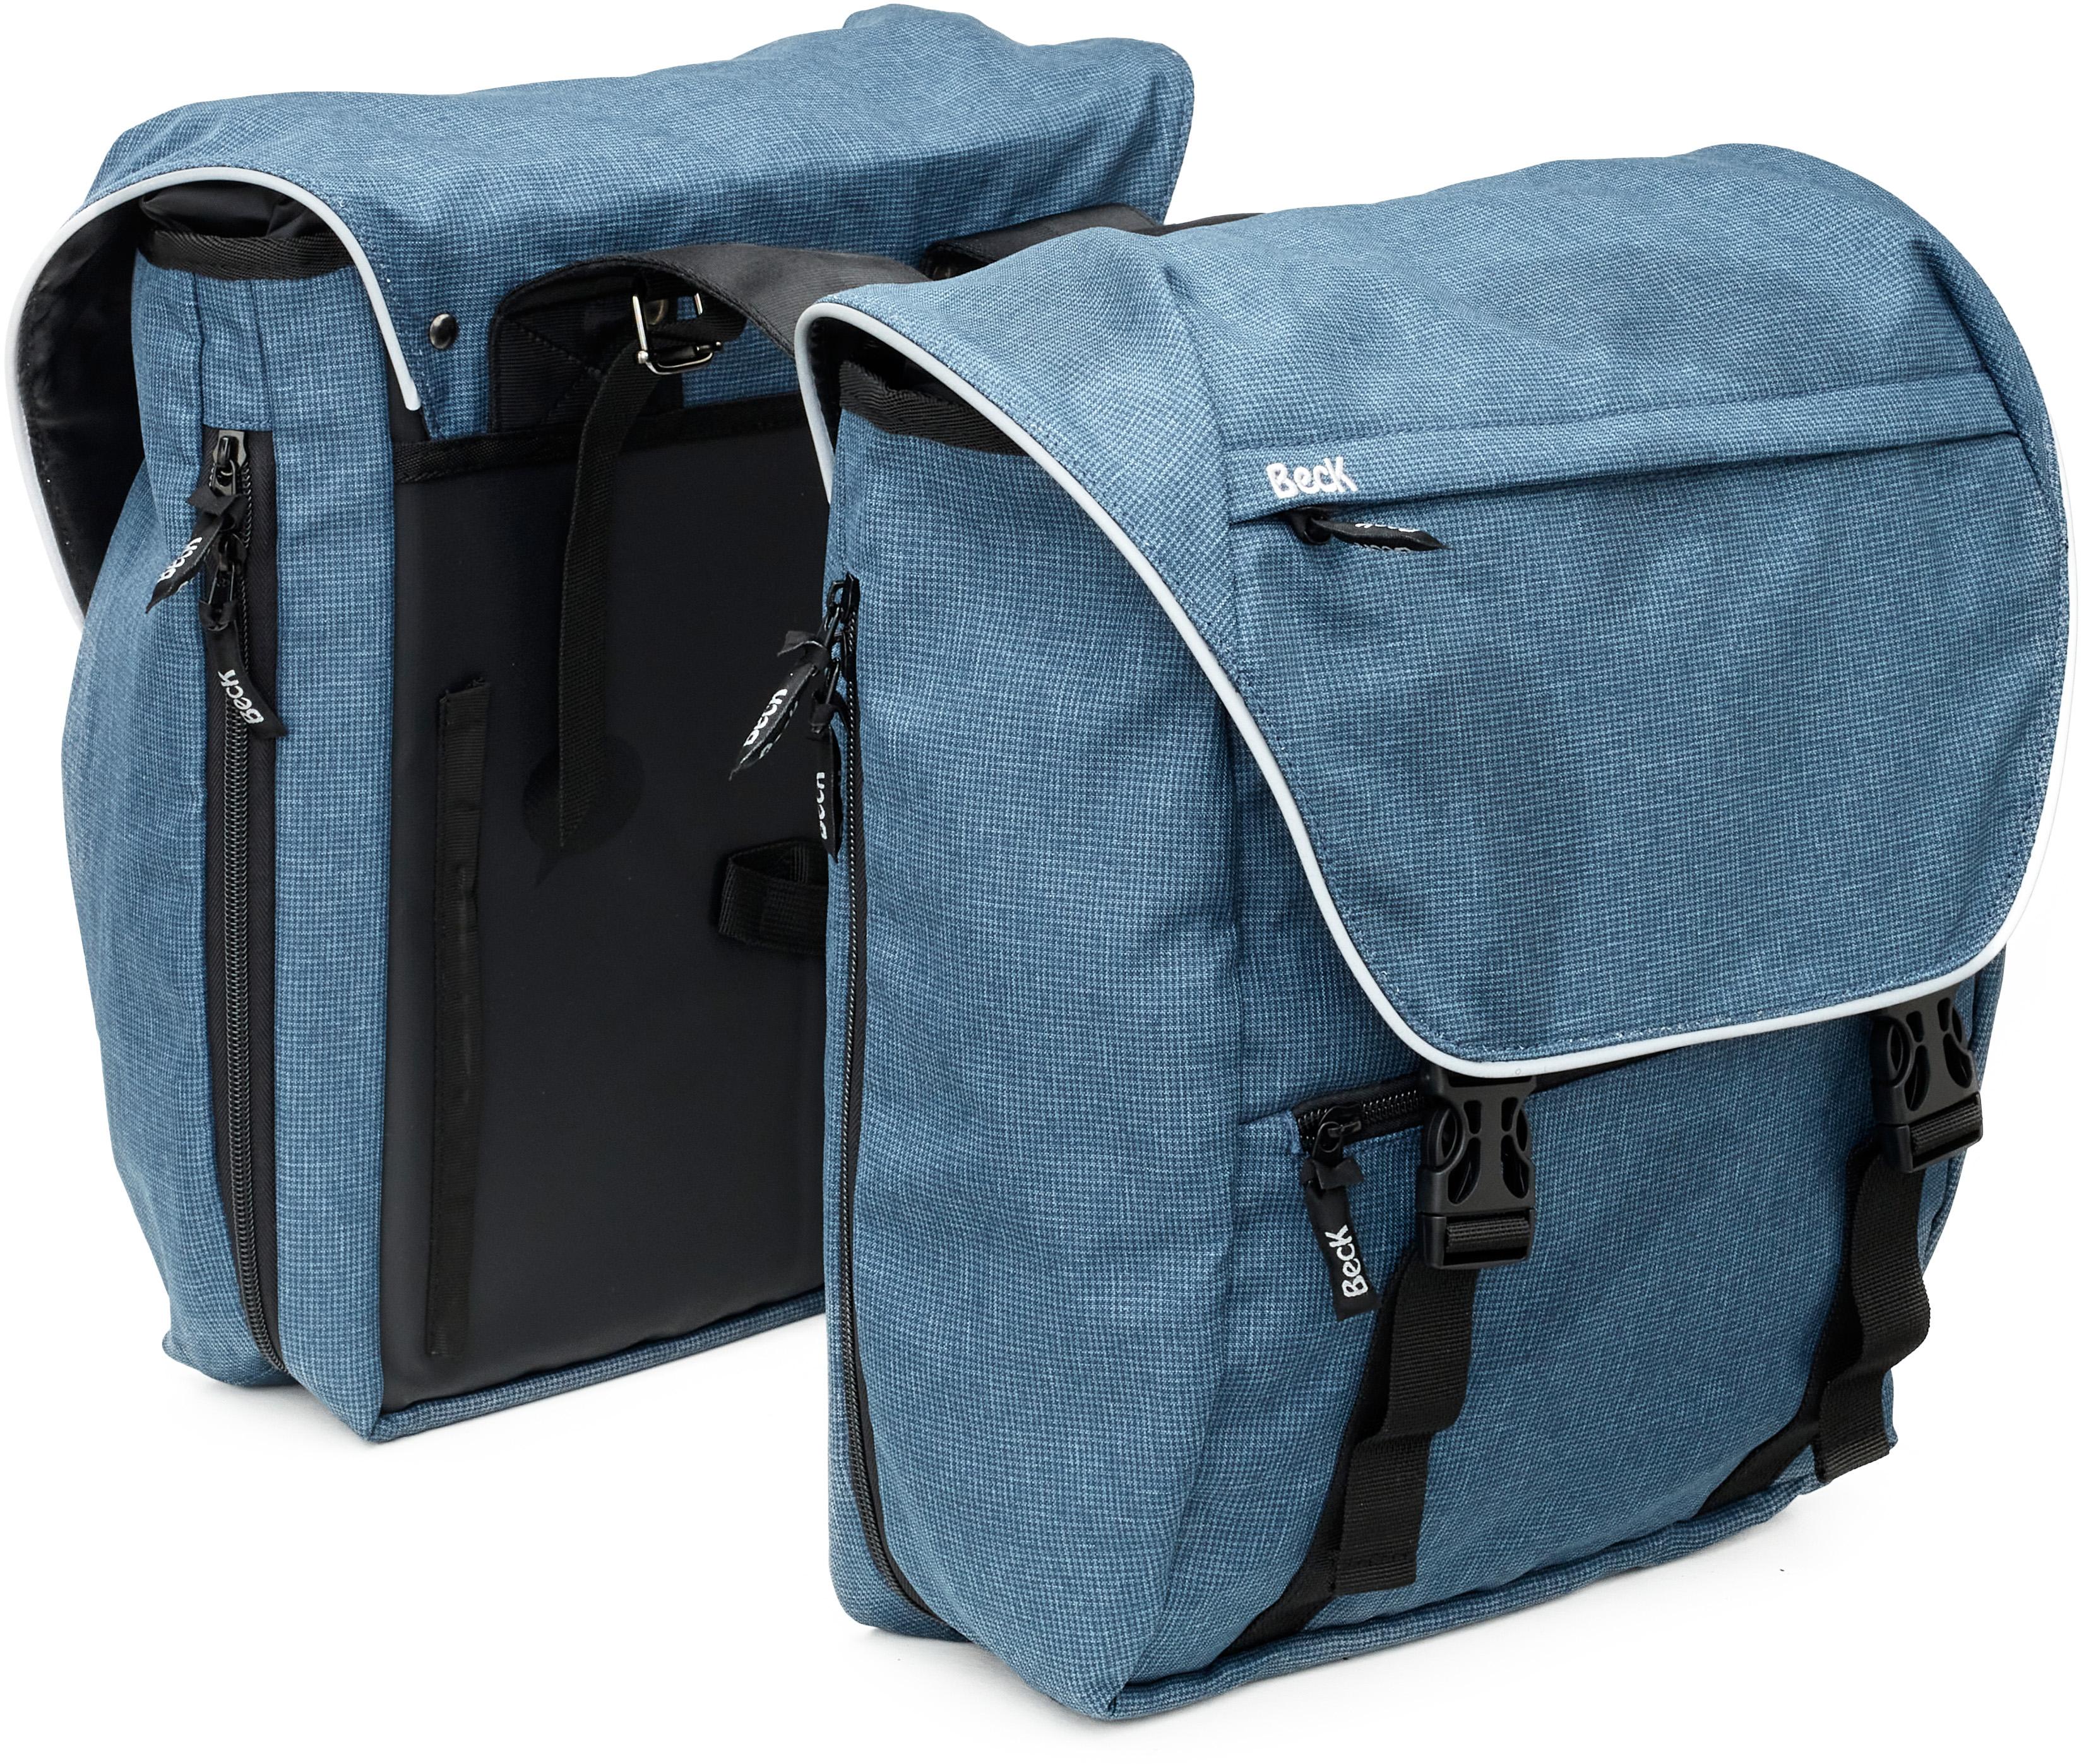 Beck Sporty Double Pannier Bag Blue